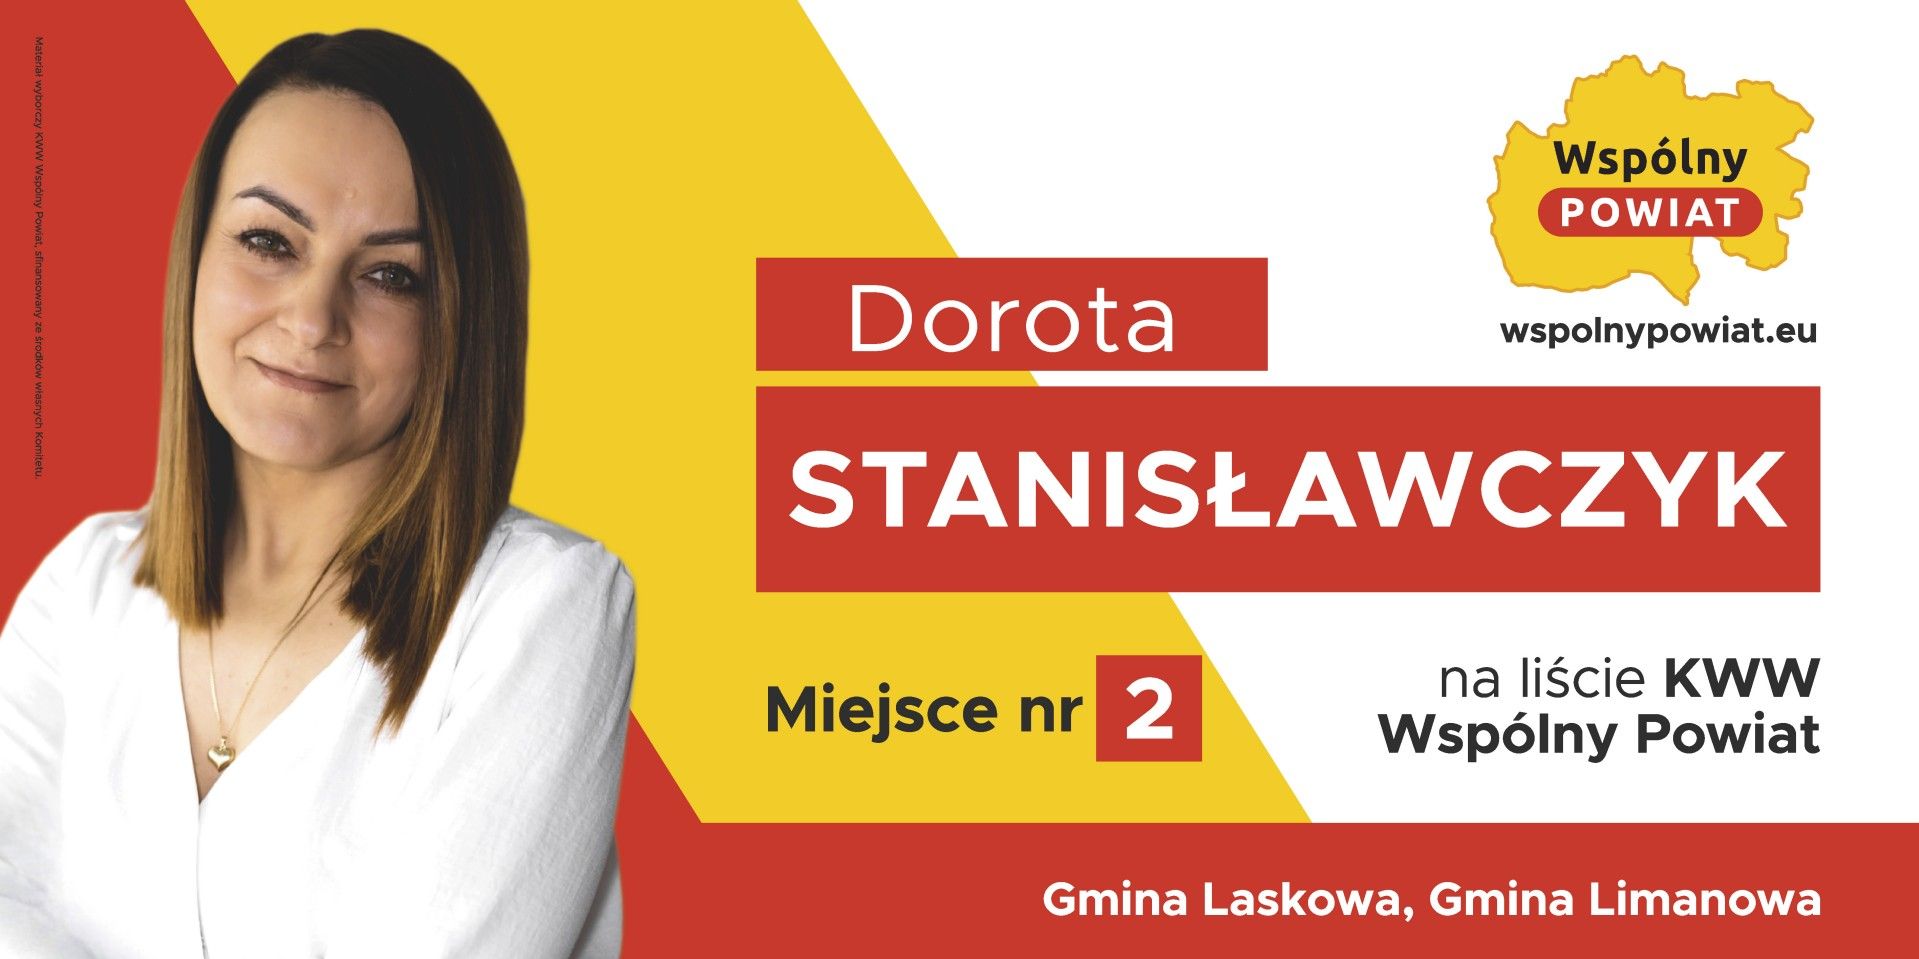 Dorota Stanisławczyk